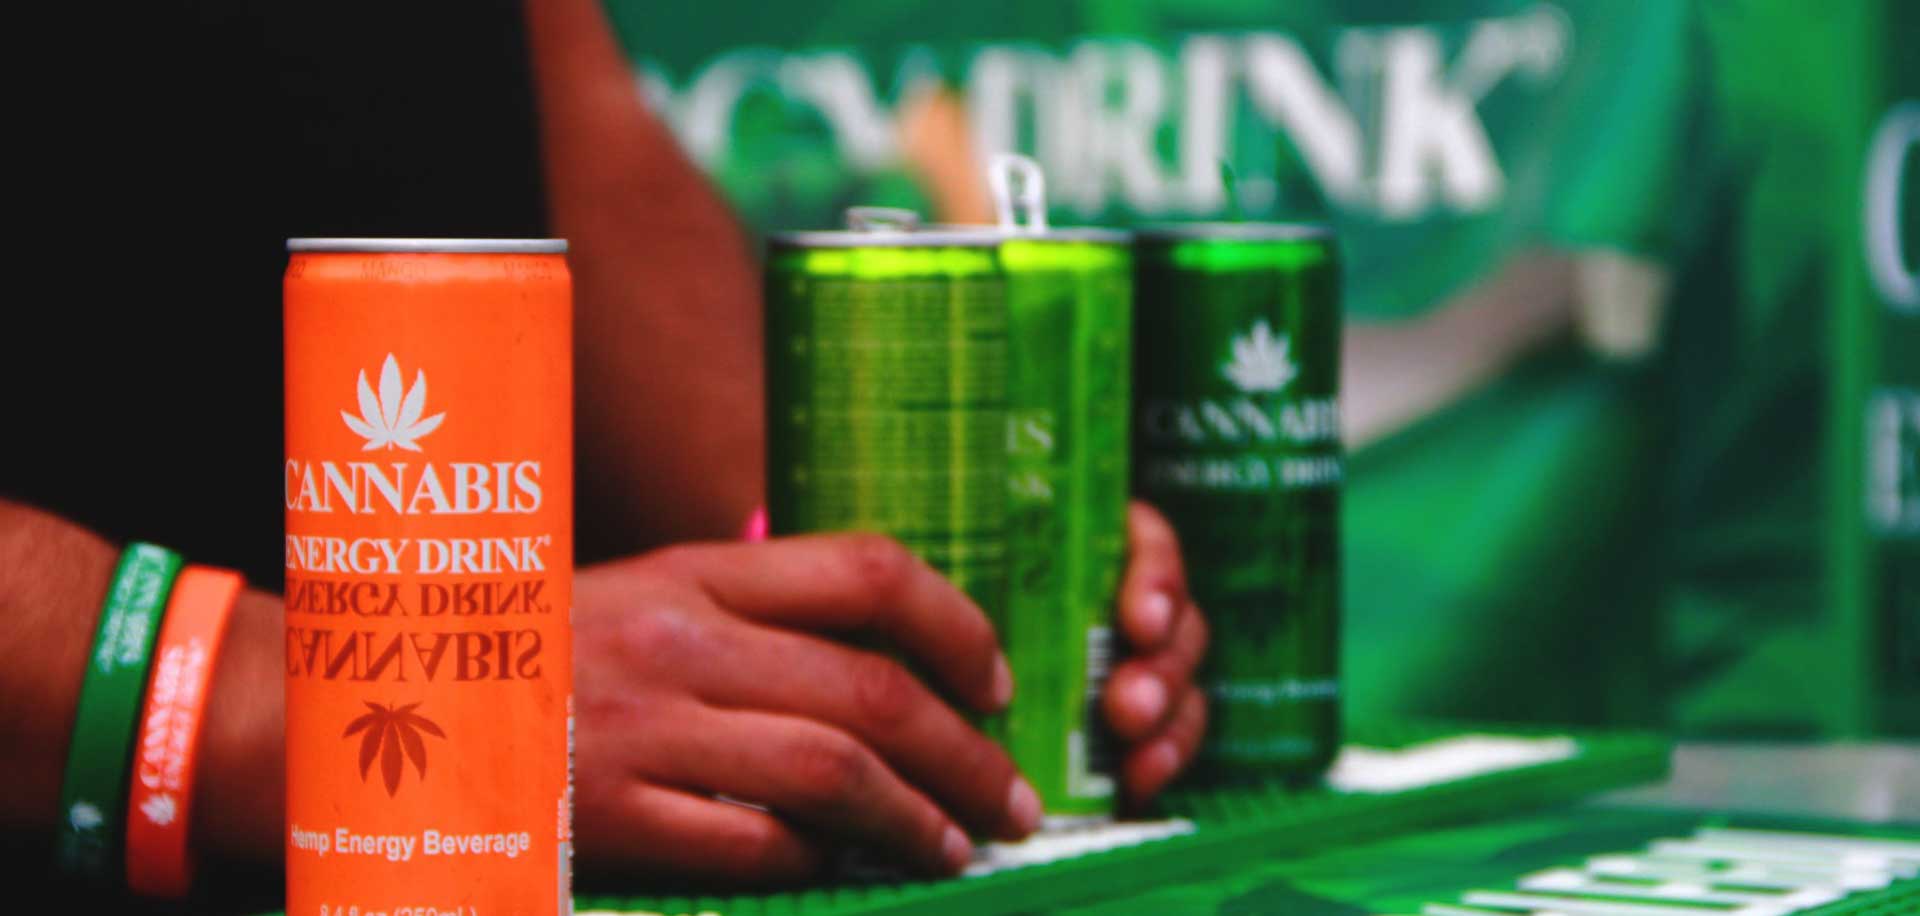 vendi cannabis energy drink nel tuo locale